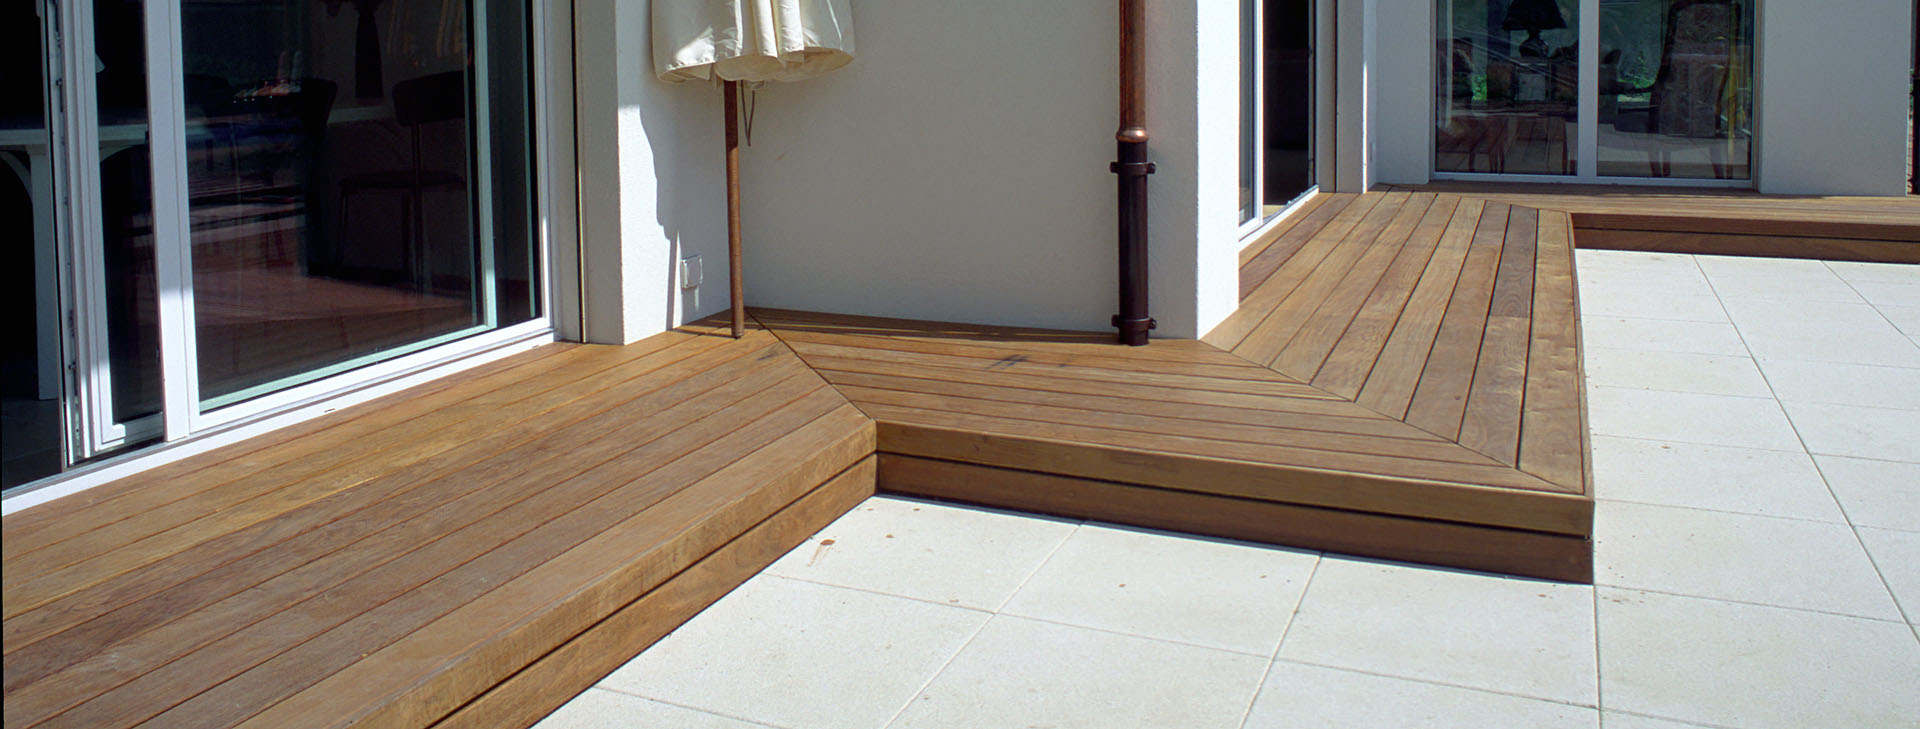 terrasse en bois exotique ipé visserie invisible avec clips en acier inoxydable passage